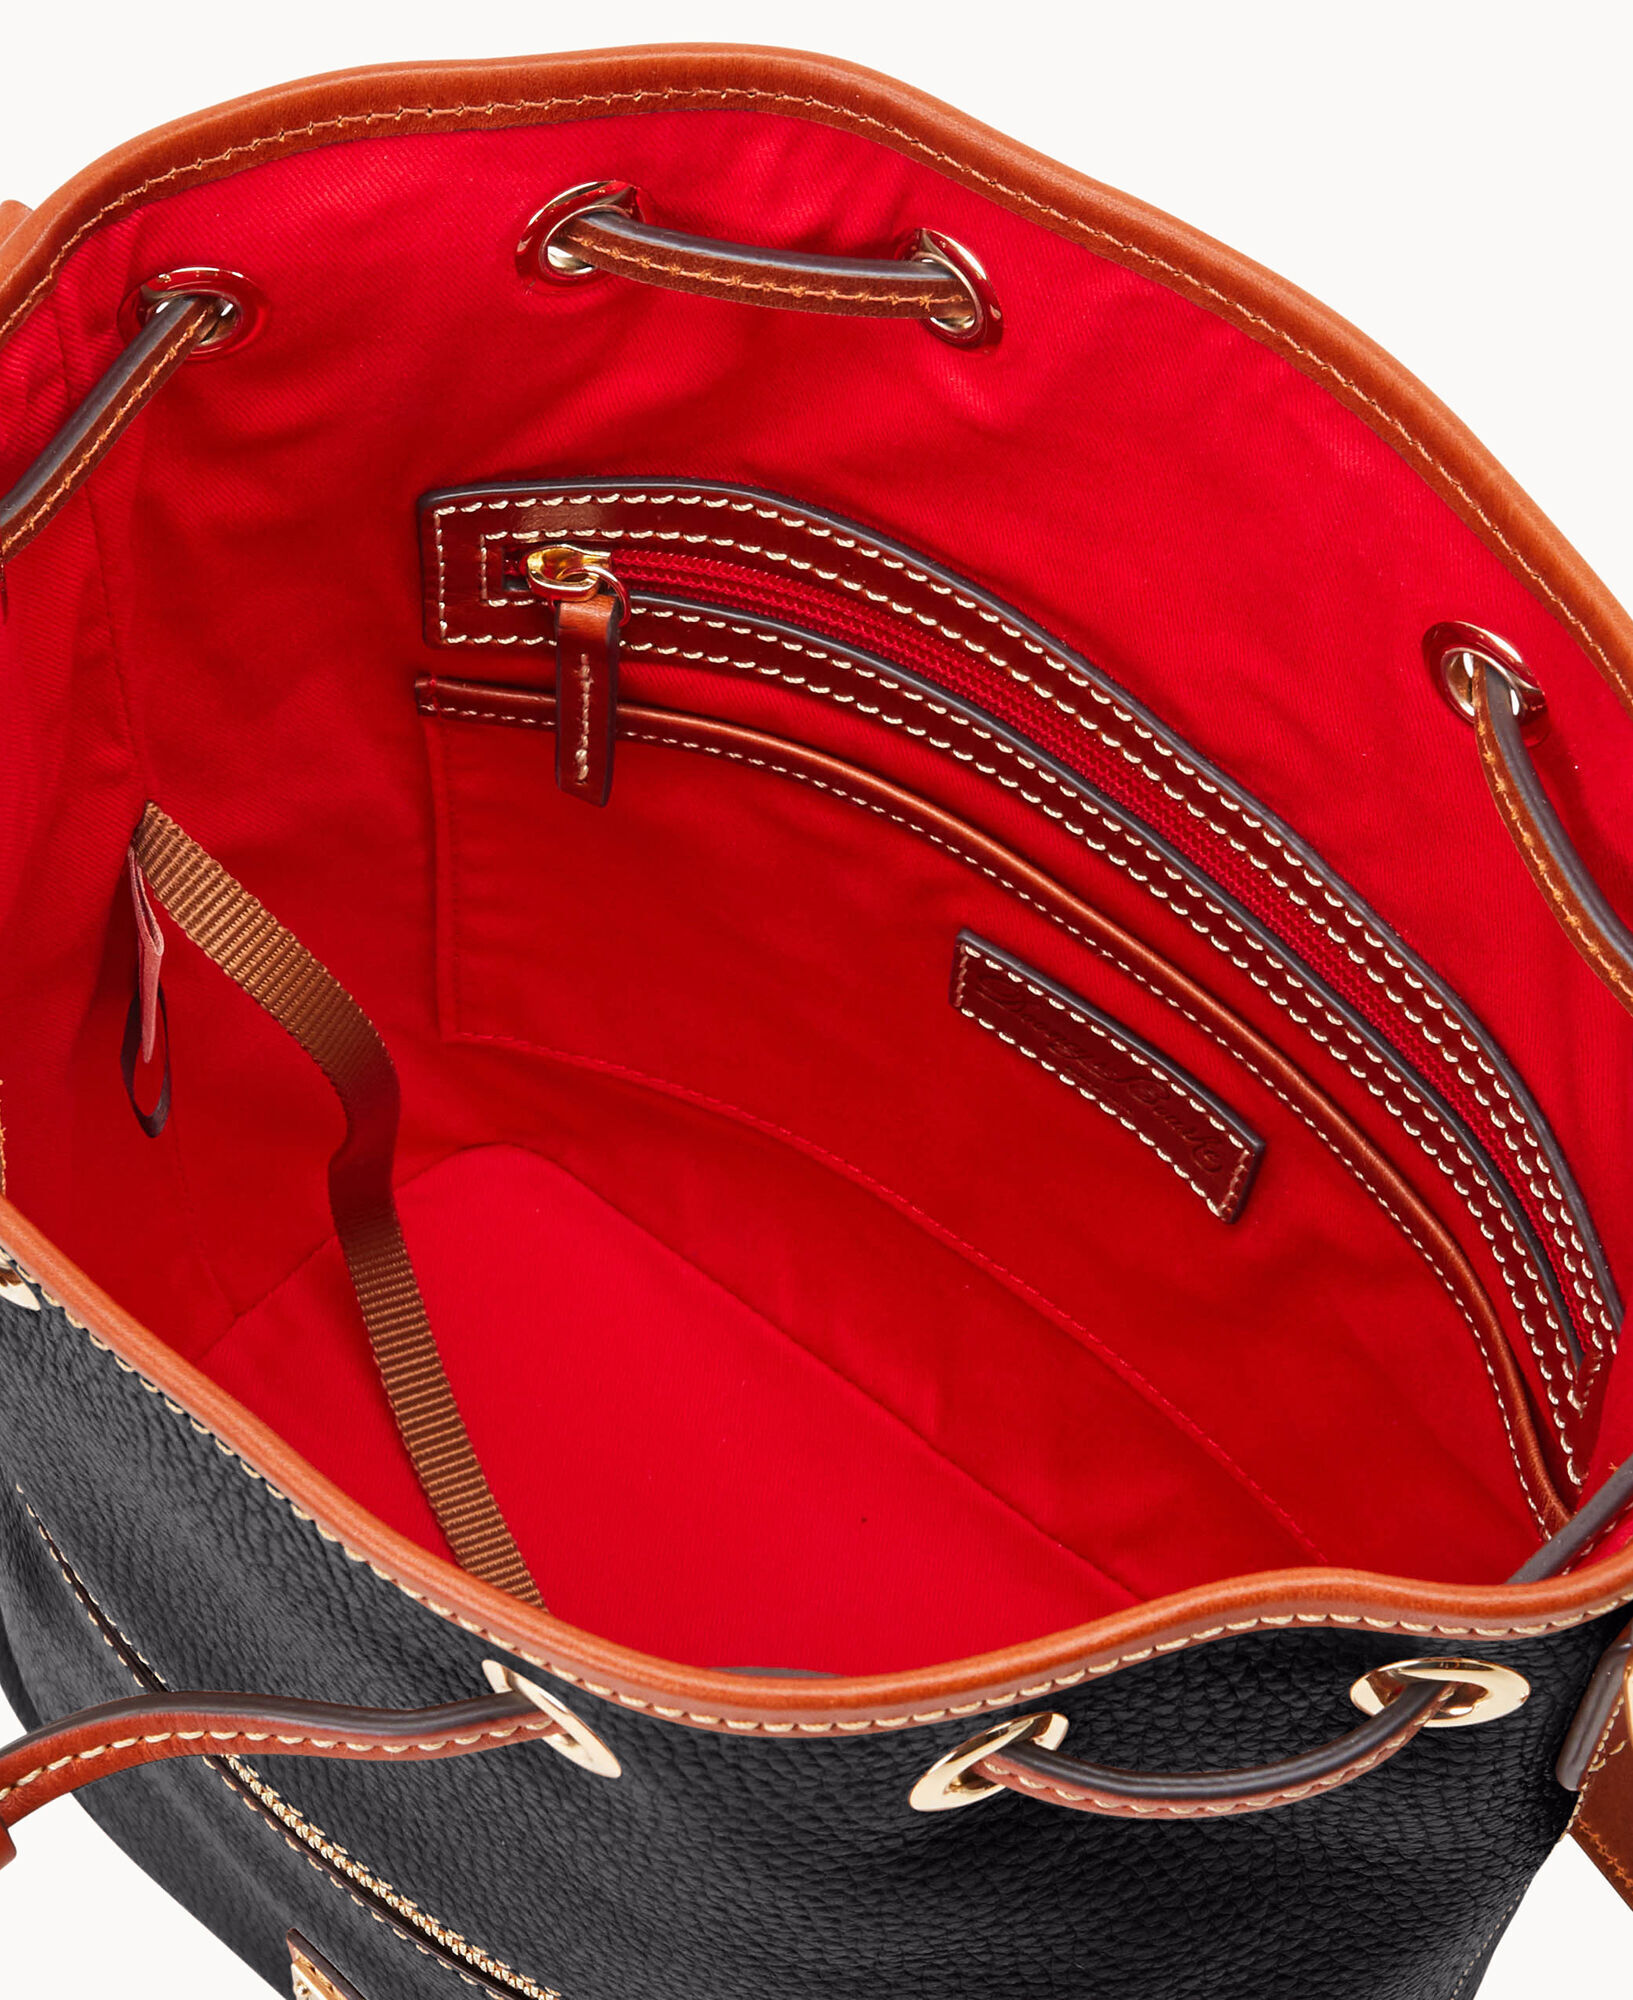 Dooney & Bourke Drawstring Pebble Leather Large Shoulder Bag